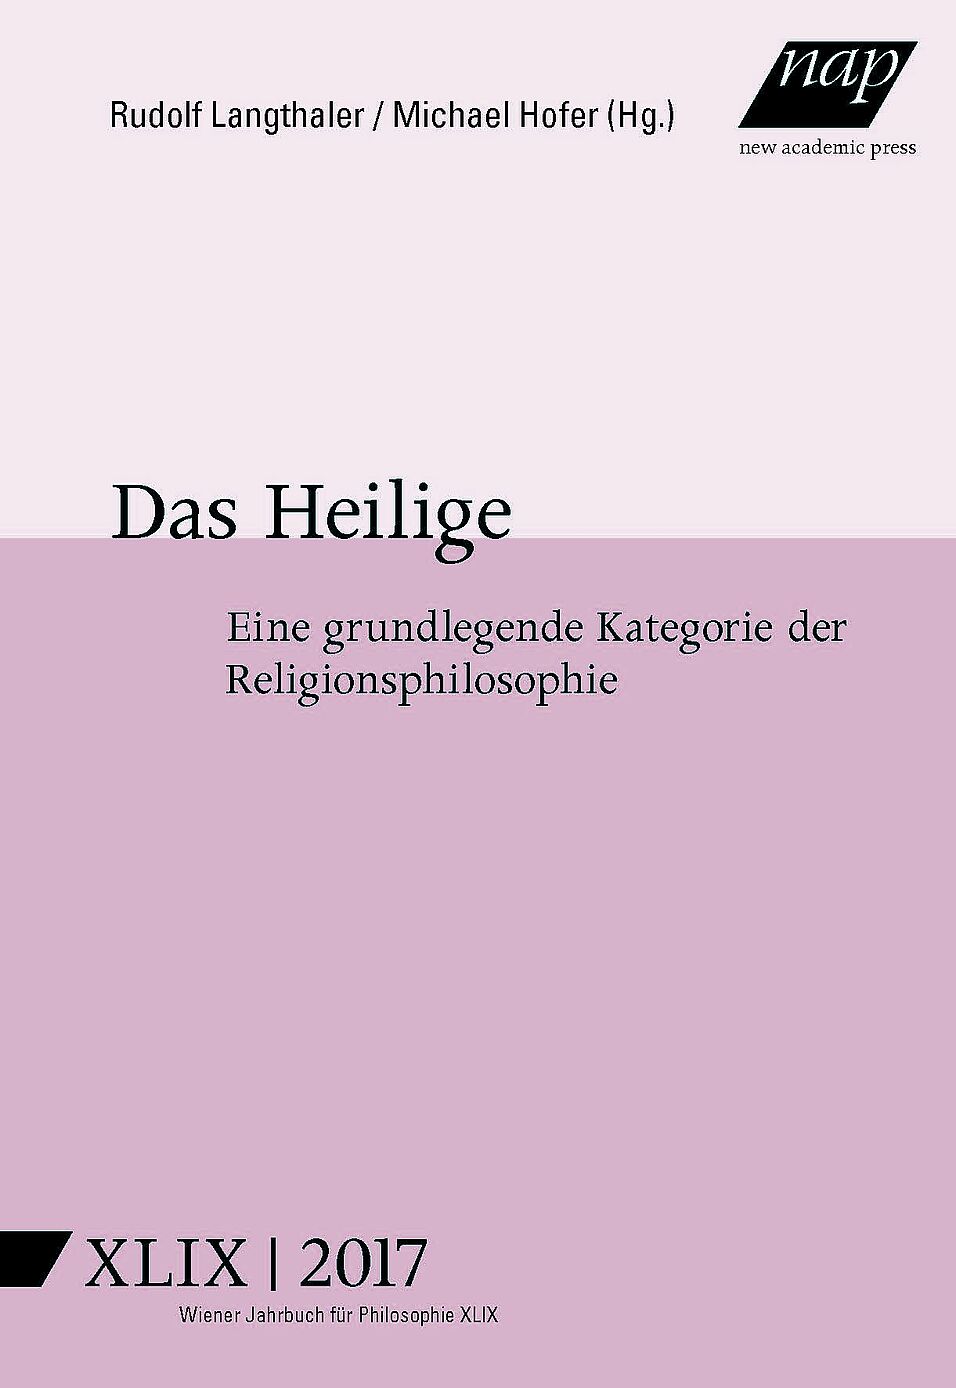 Cover Wiener Jahrbuch Philosophie Band 49 Das Heilige